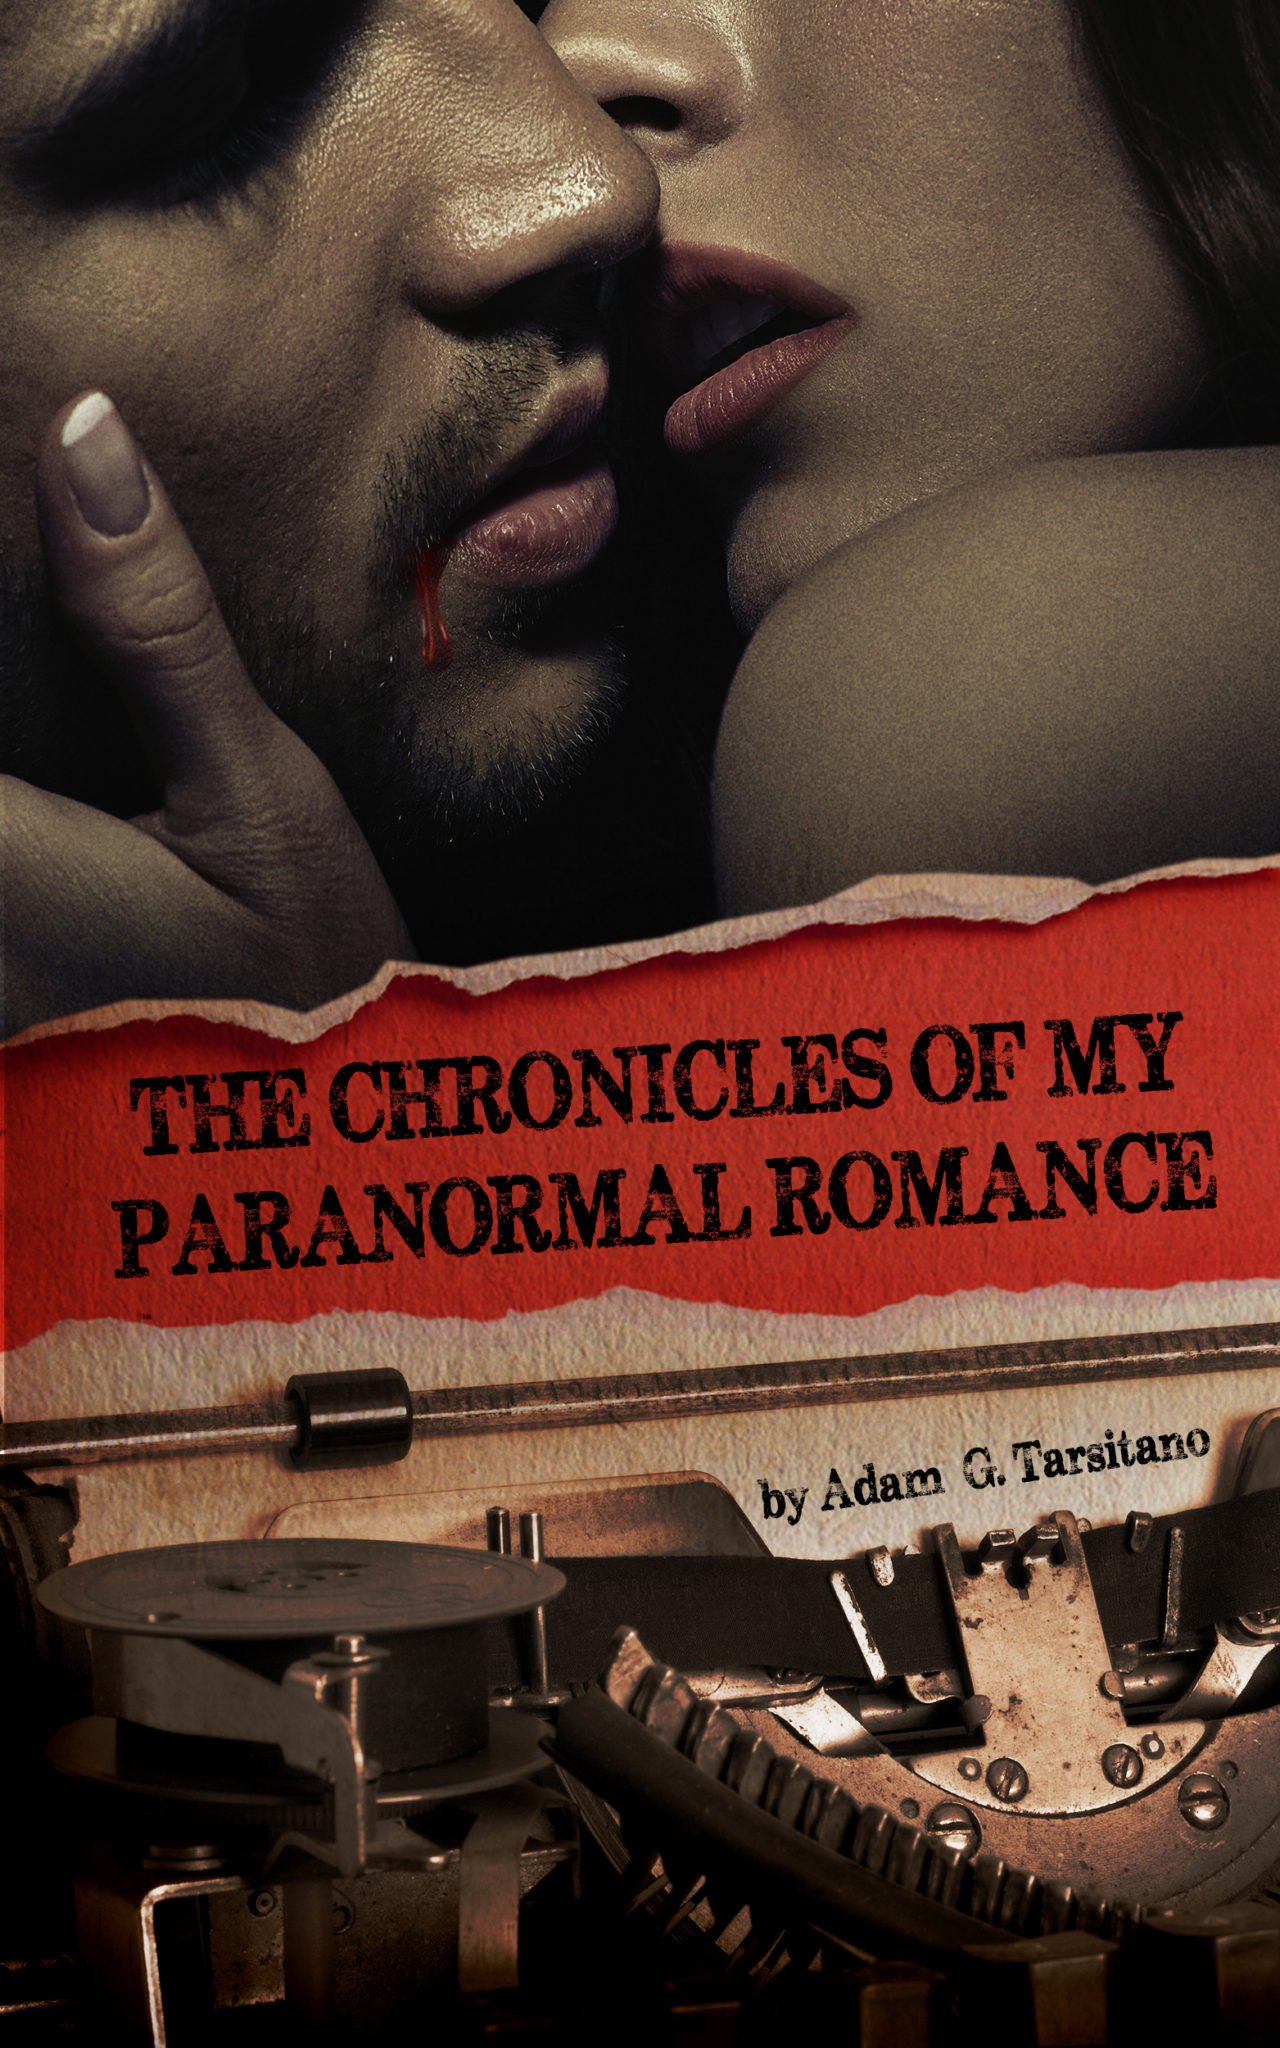 FREE: The Chronicles of My Paranormal Romance by Adam G. Tarsitano by Adam G. Tarsitano